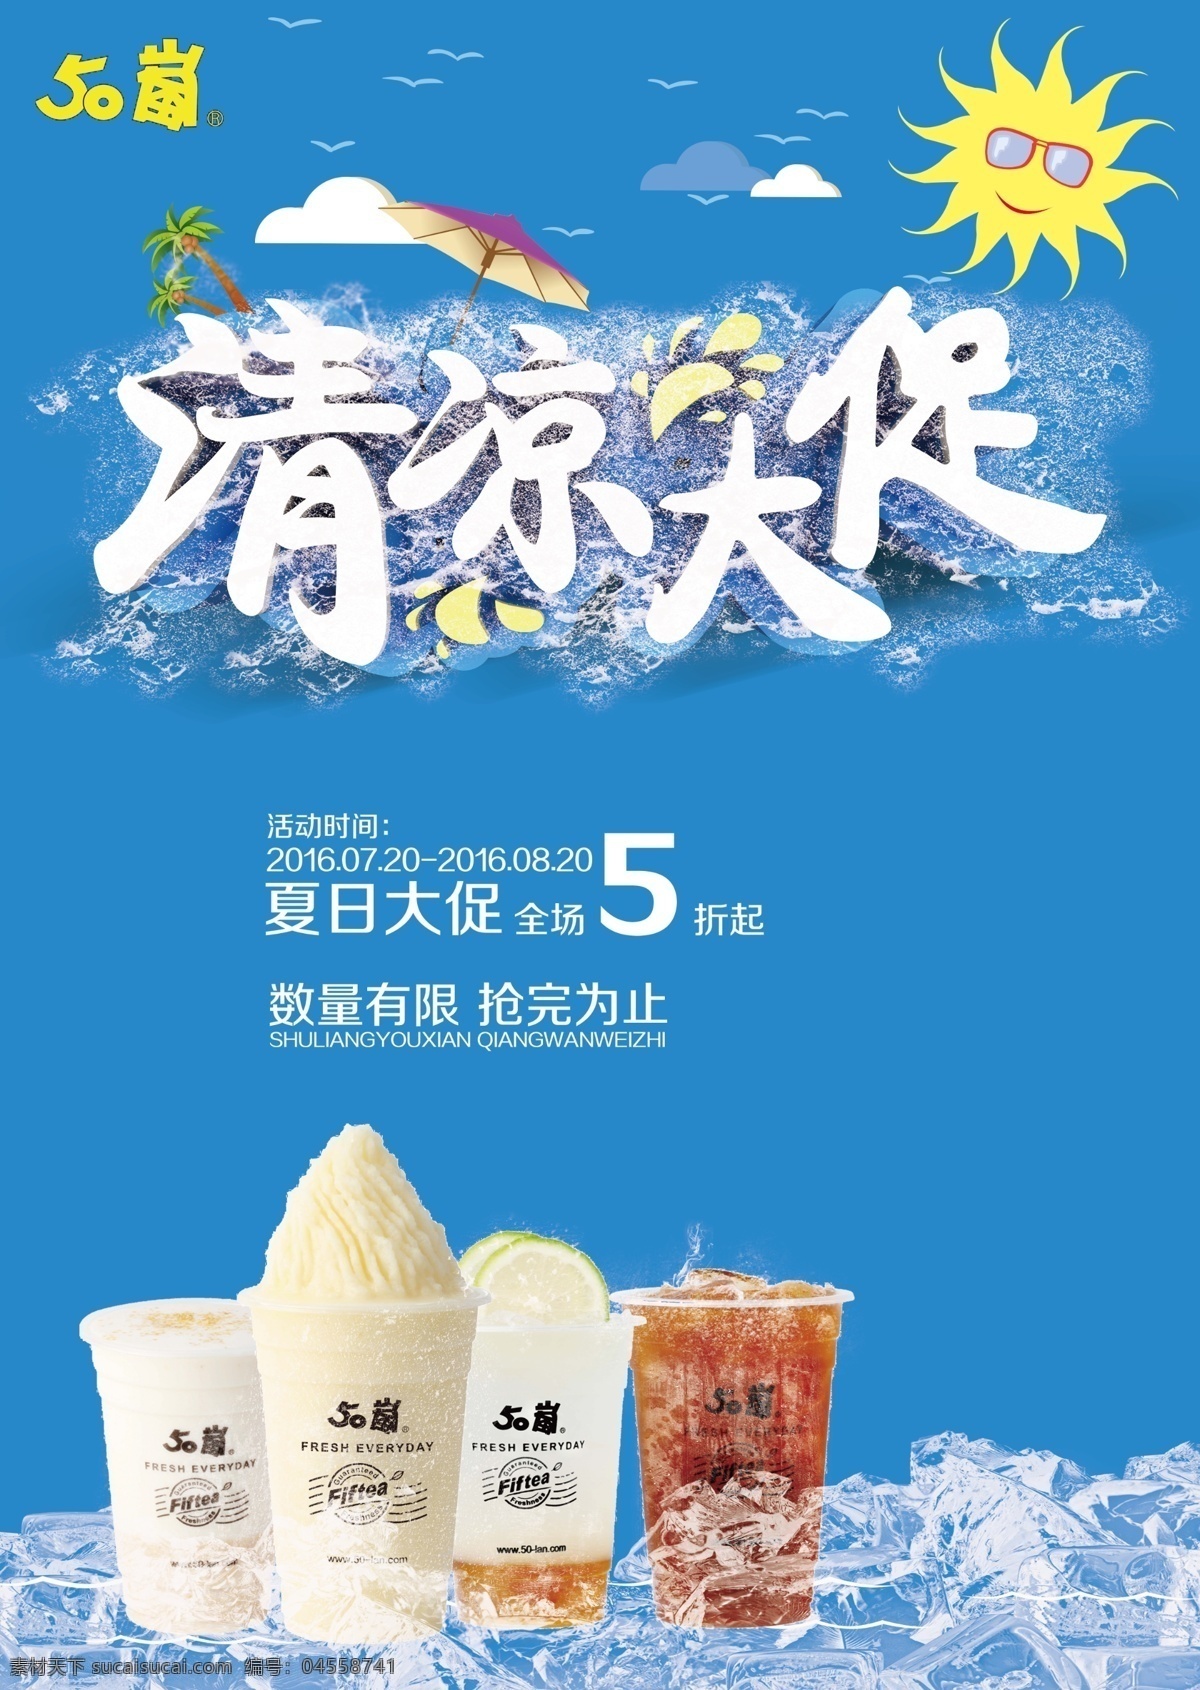 夏日冰饮海报 psd分层 冰淇淋 广告 海报 平面设计 招贴 冰饮 宣传 源文件 蓝色